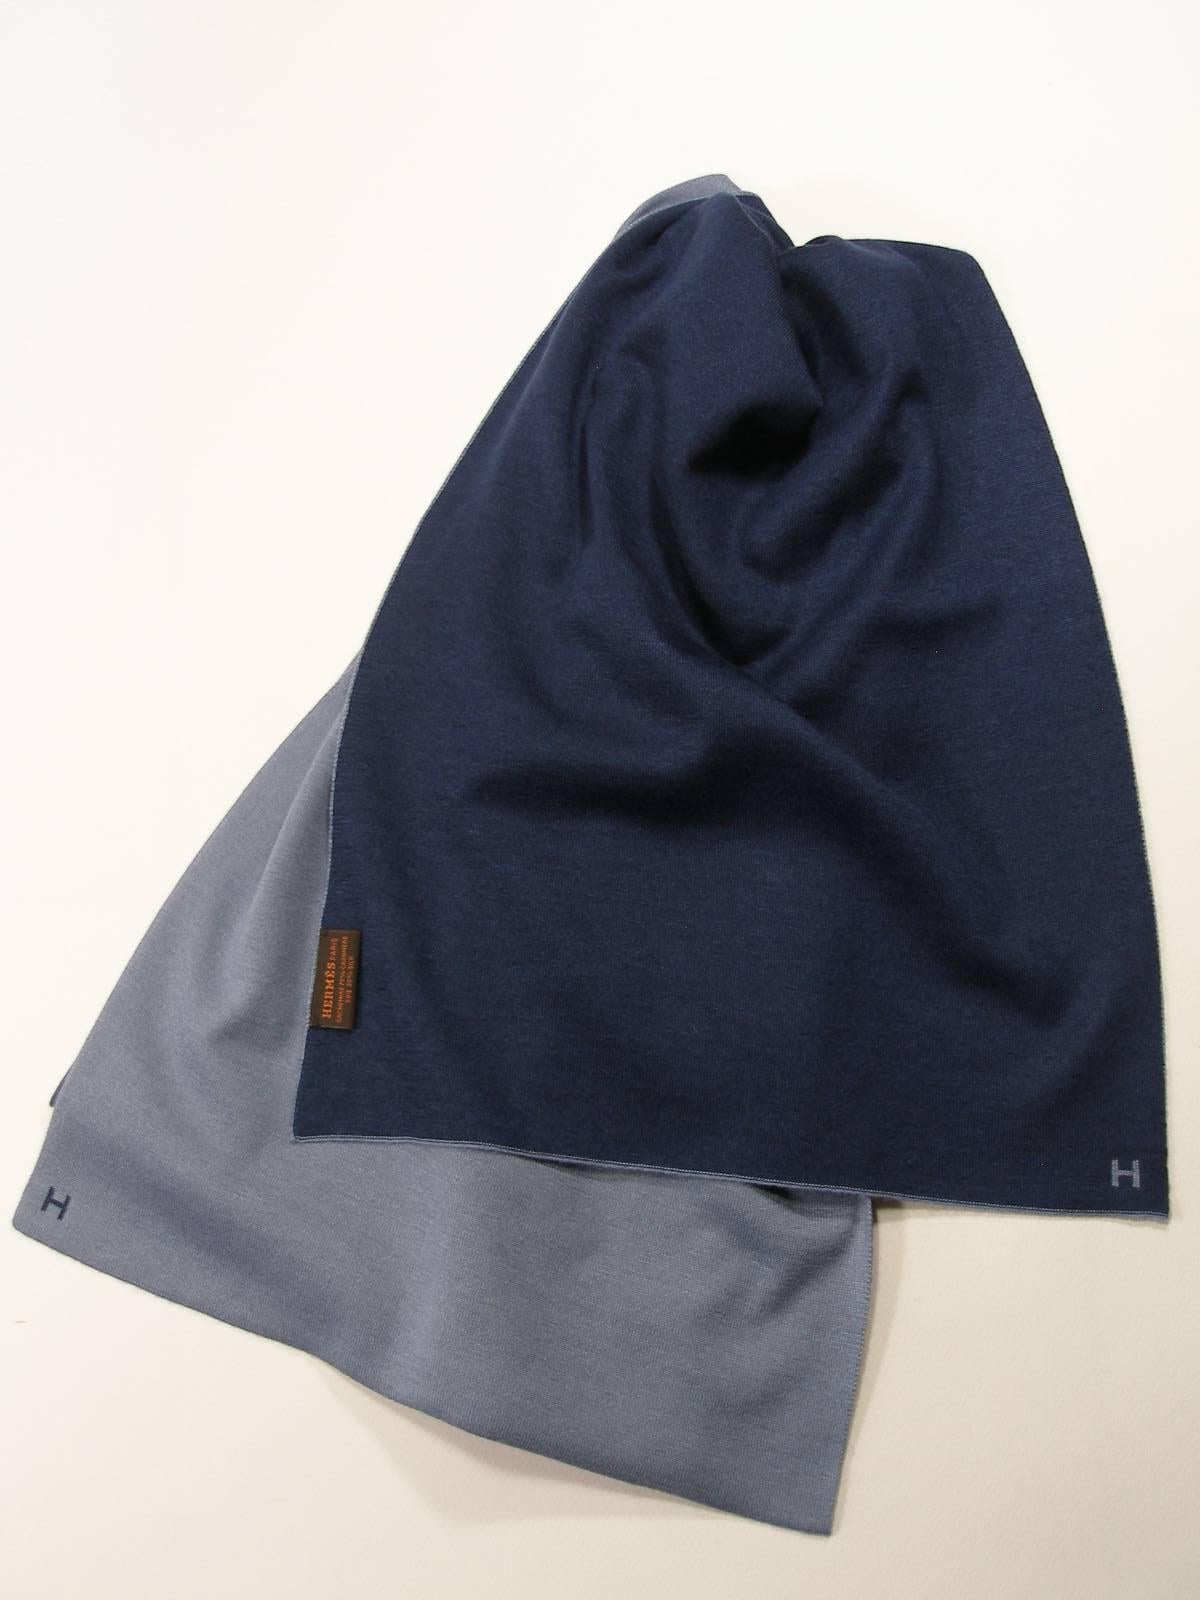 Brand New Hermès Scarf Aller / Retour For Men Cashmere and Silk Bleu Gris /Océan 1